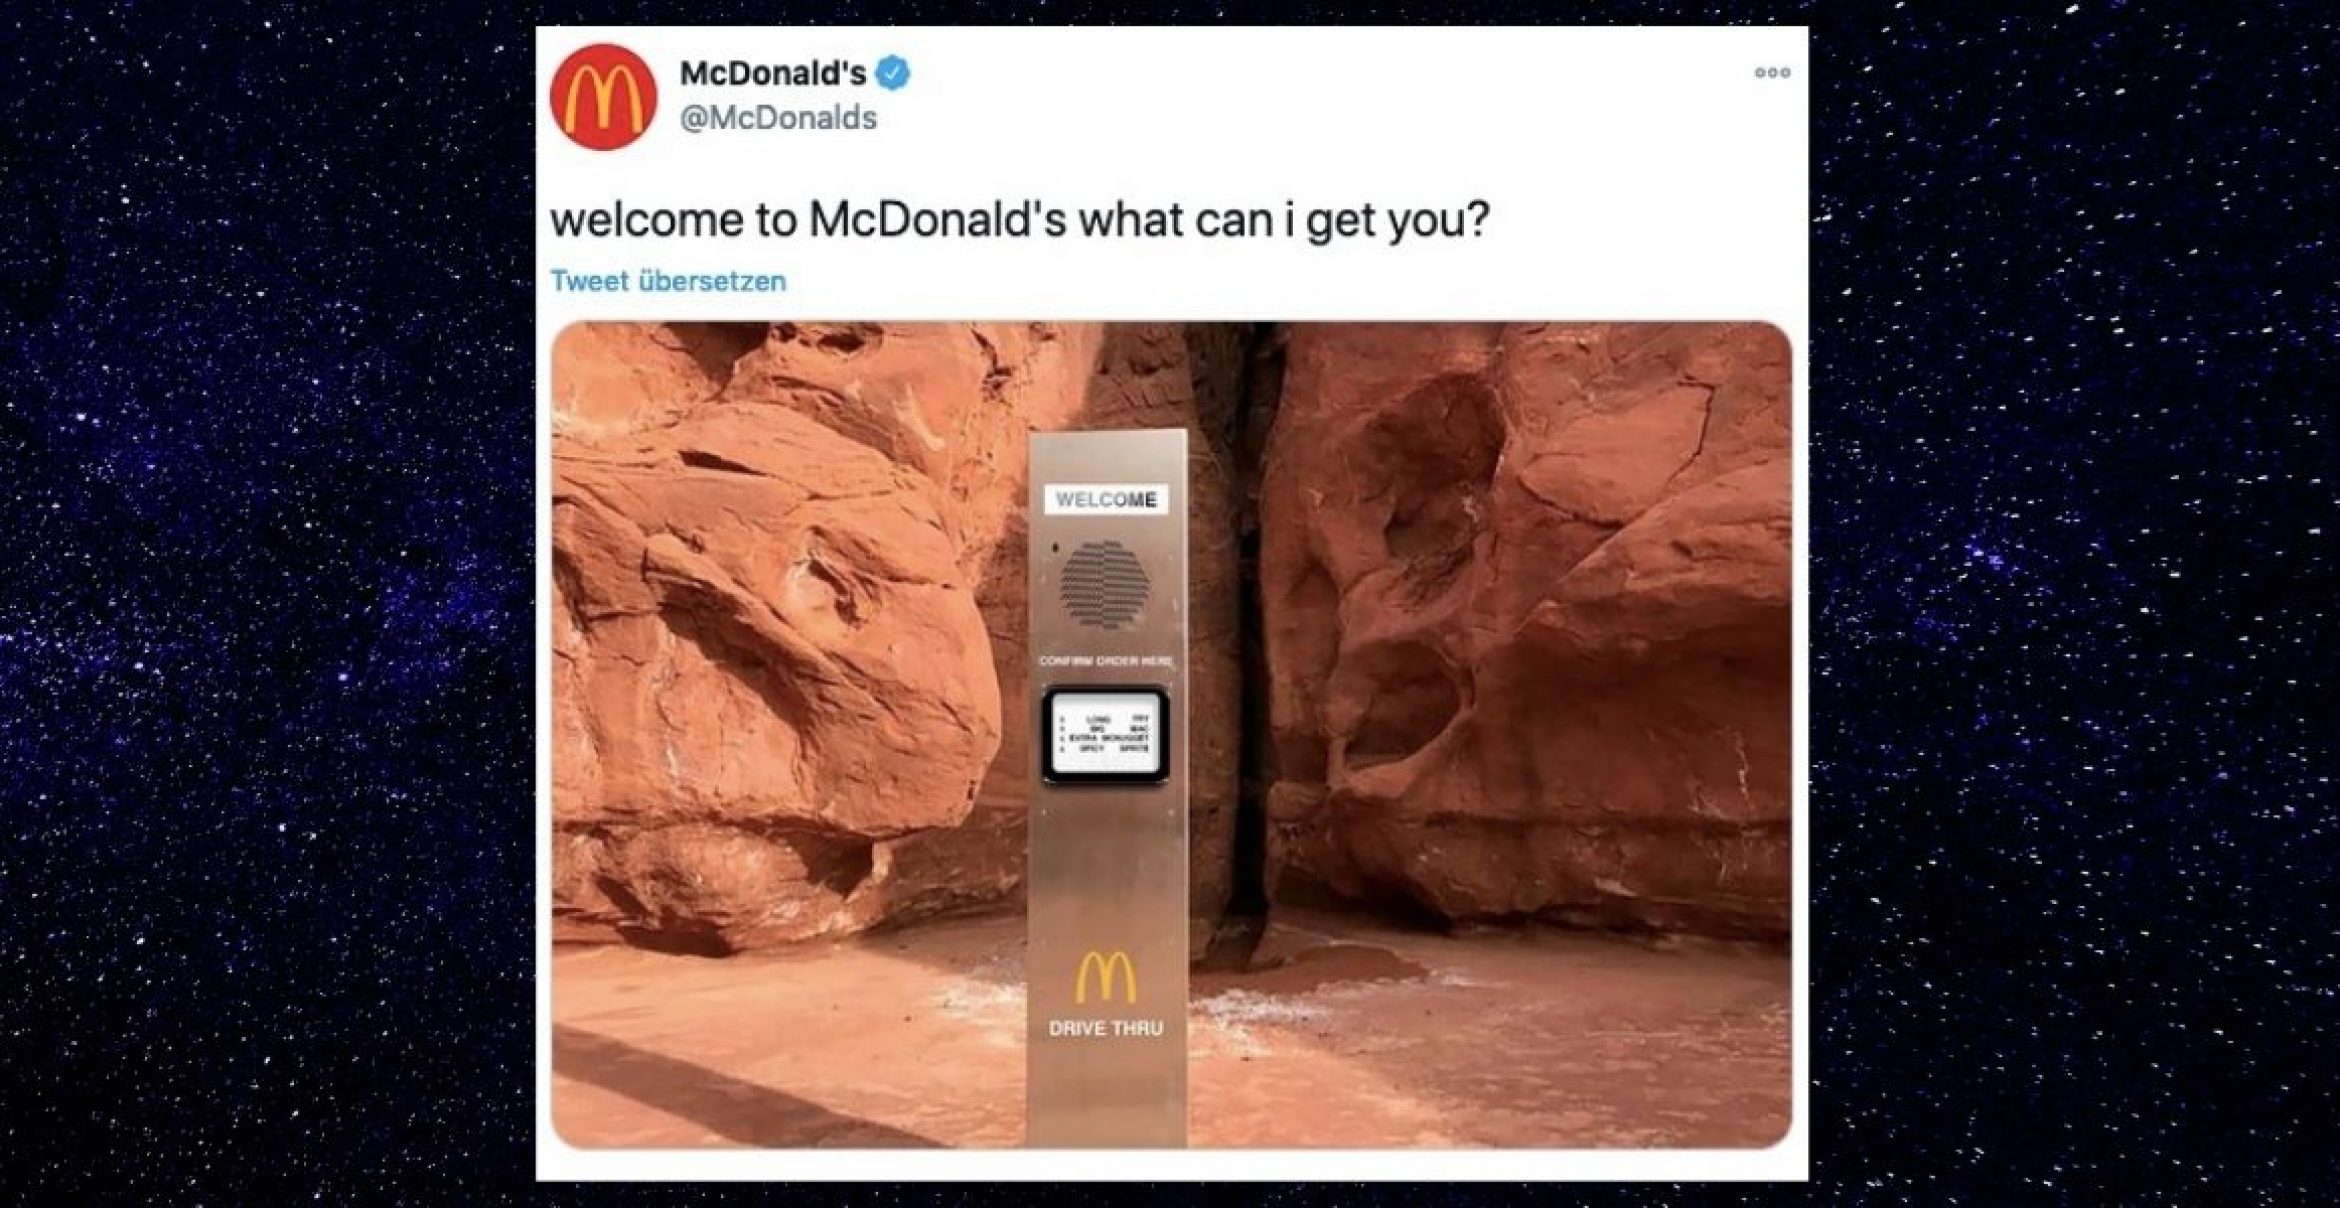 Monolith taucht in Wüste auf – McDonald’s reagiert gekonnt und wirft Photoshop an